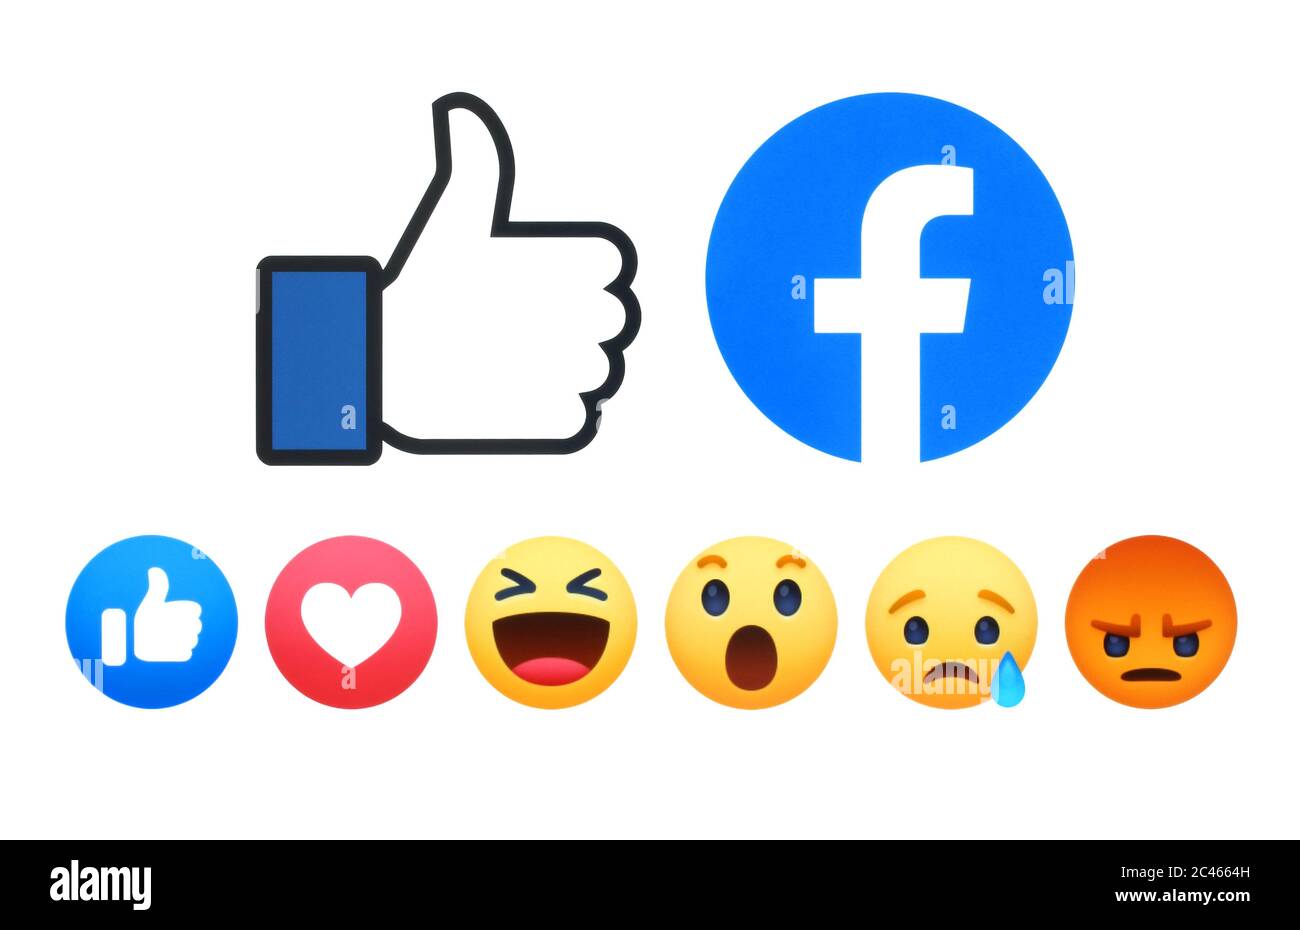 Kiev, Ukraine - 02 mai 2019: Nouveau Facebook Like Button 6 empathique réactions Emoji imprimé sur le livre blanc. Facebook est un réseau social bien connu Banque D'Images